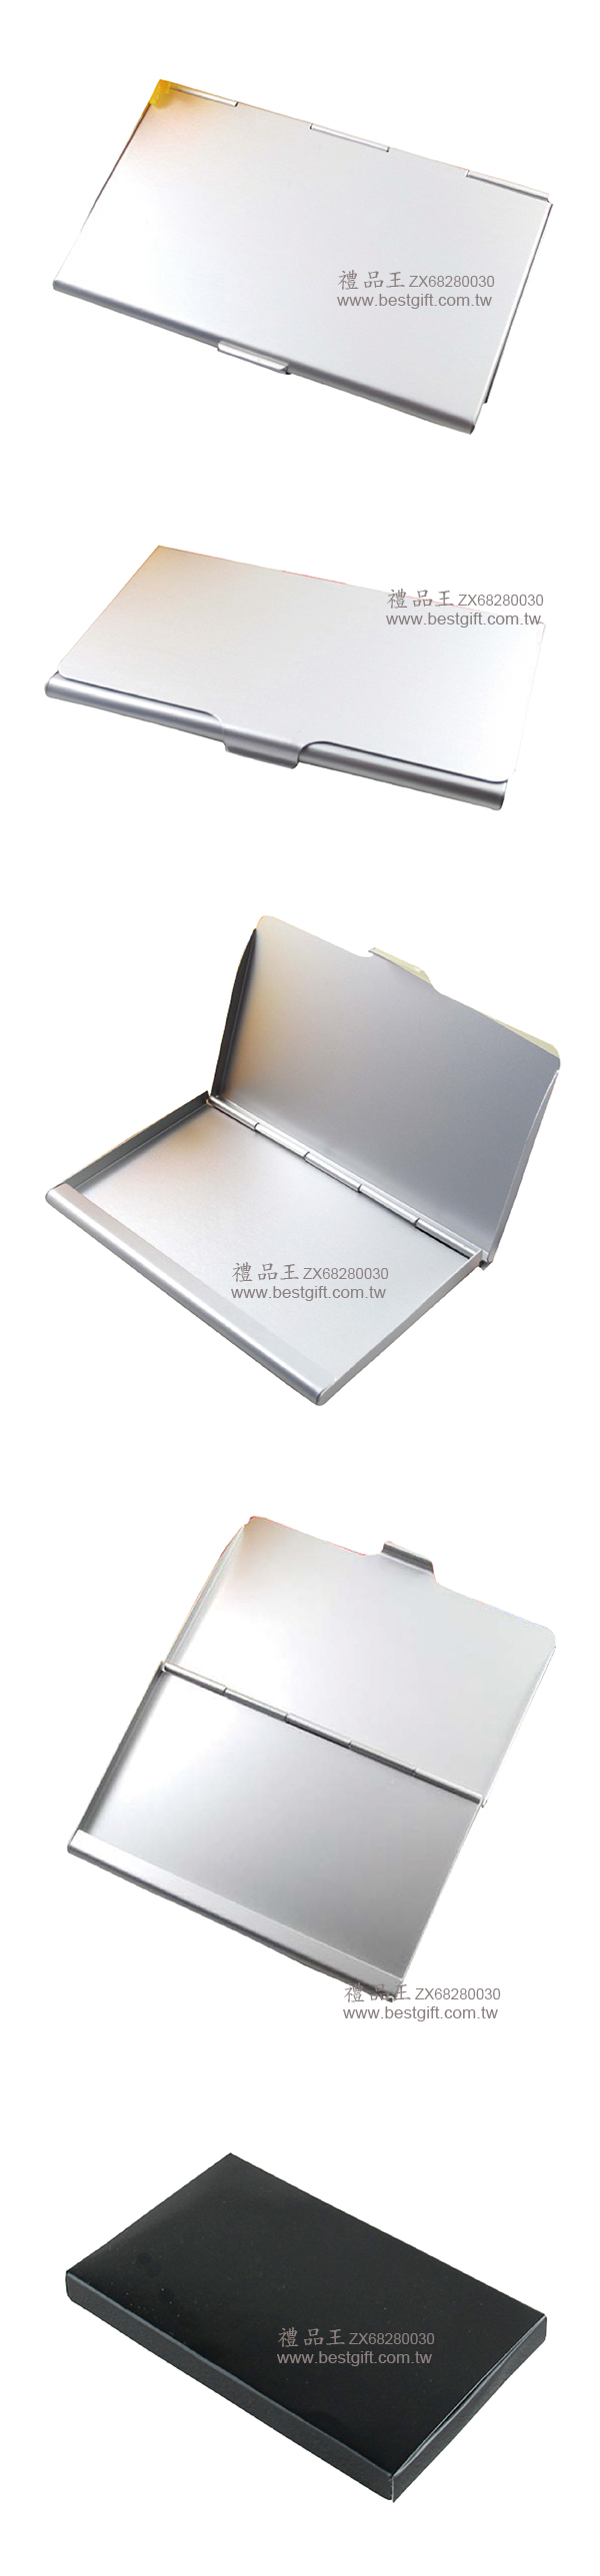 鋁合金優雅名片盒   商品貨號 : ZX68280030